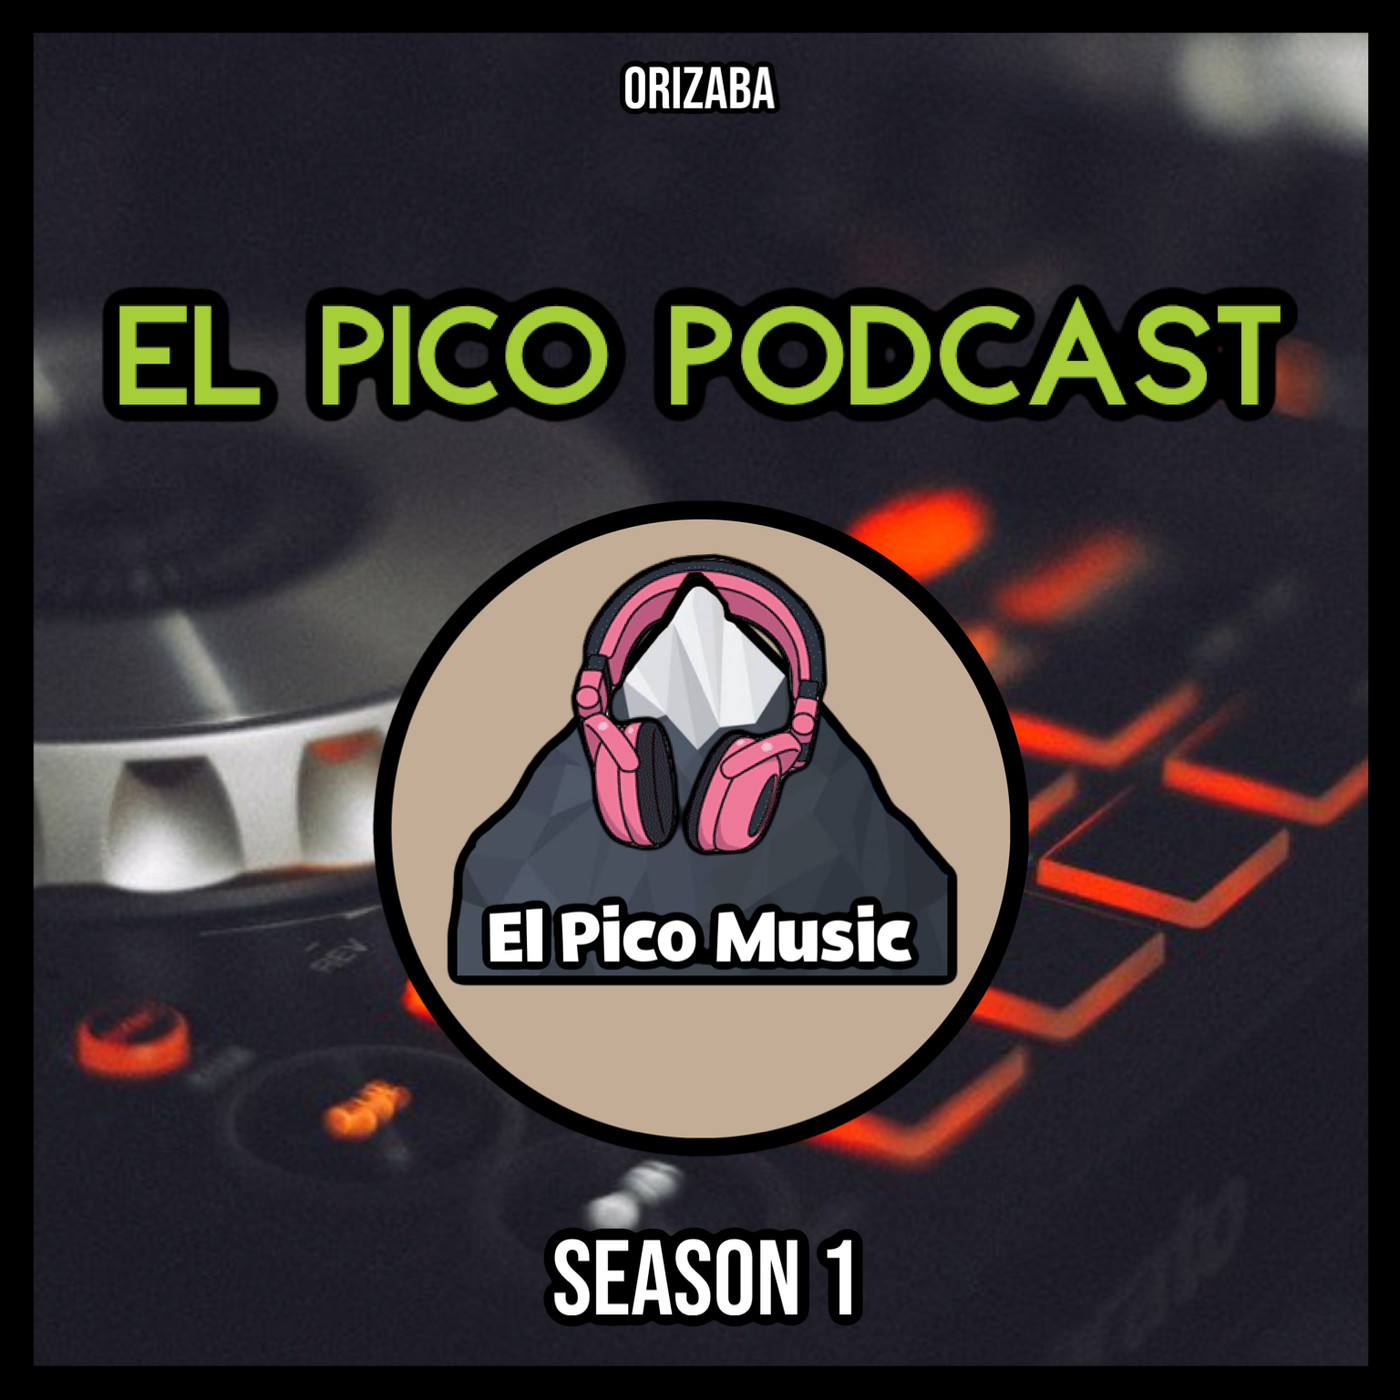 El Pico Podcast Season 1